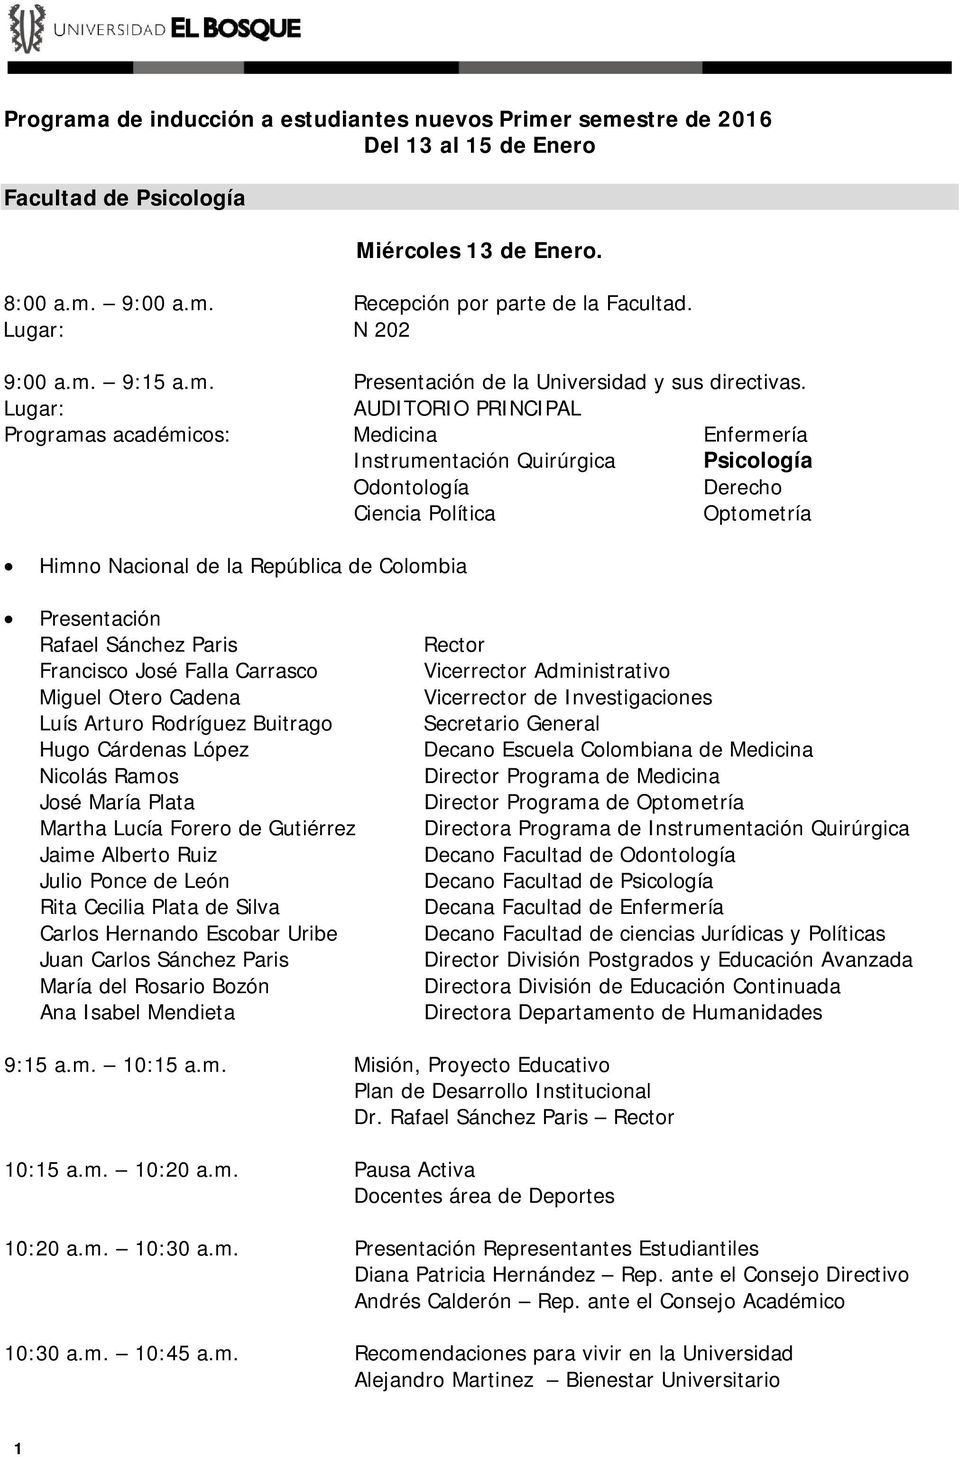 Programas académicos: Medicina Enfermería Instrumentación Quirúrgica Psicología Odontología Derecho Ciencia Política Optometría Himno Nacional de la República de Colombia Presentación Rafael Sánchez